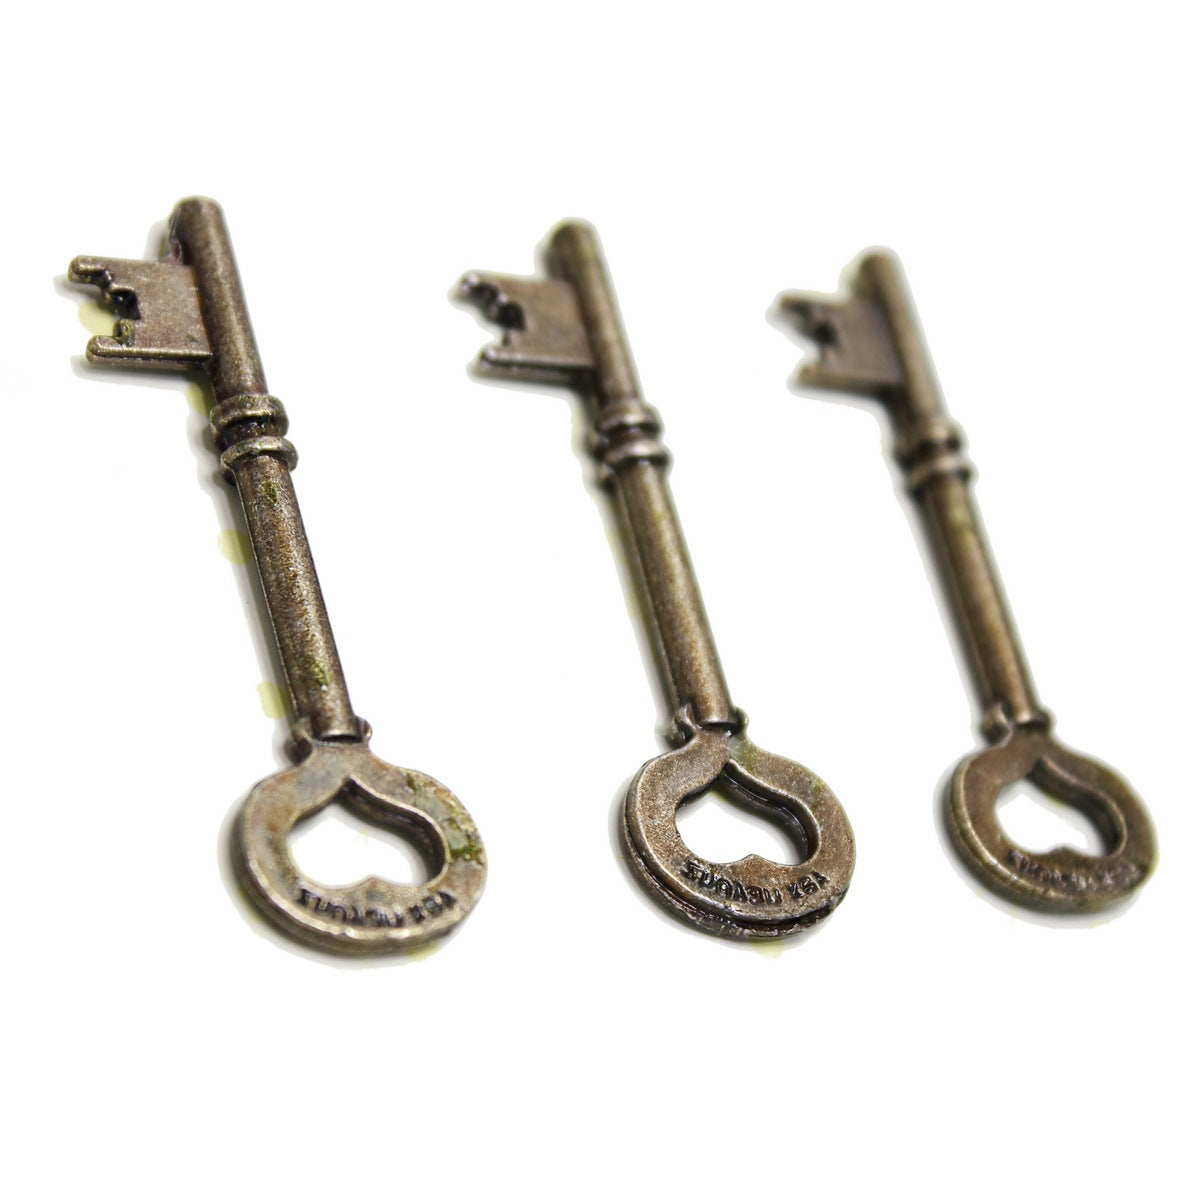 jags-mumbai Pendant Craft Metal Charms Key Medium 3pcs CMCK01